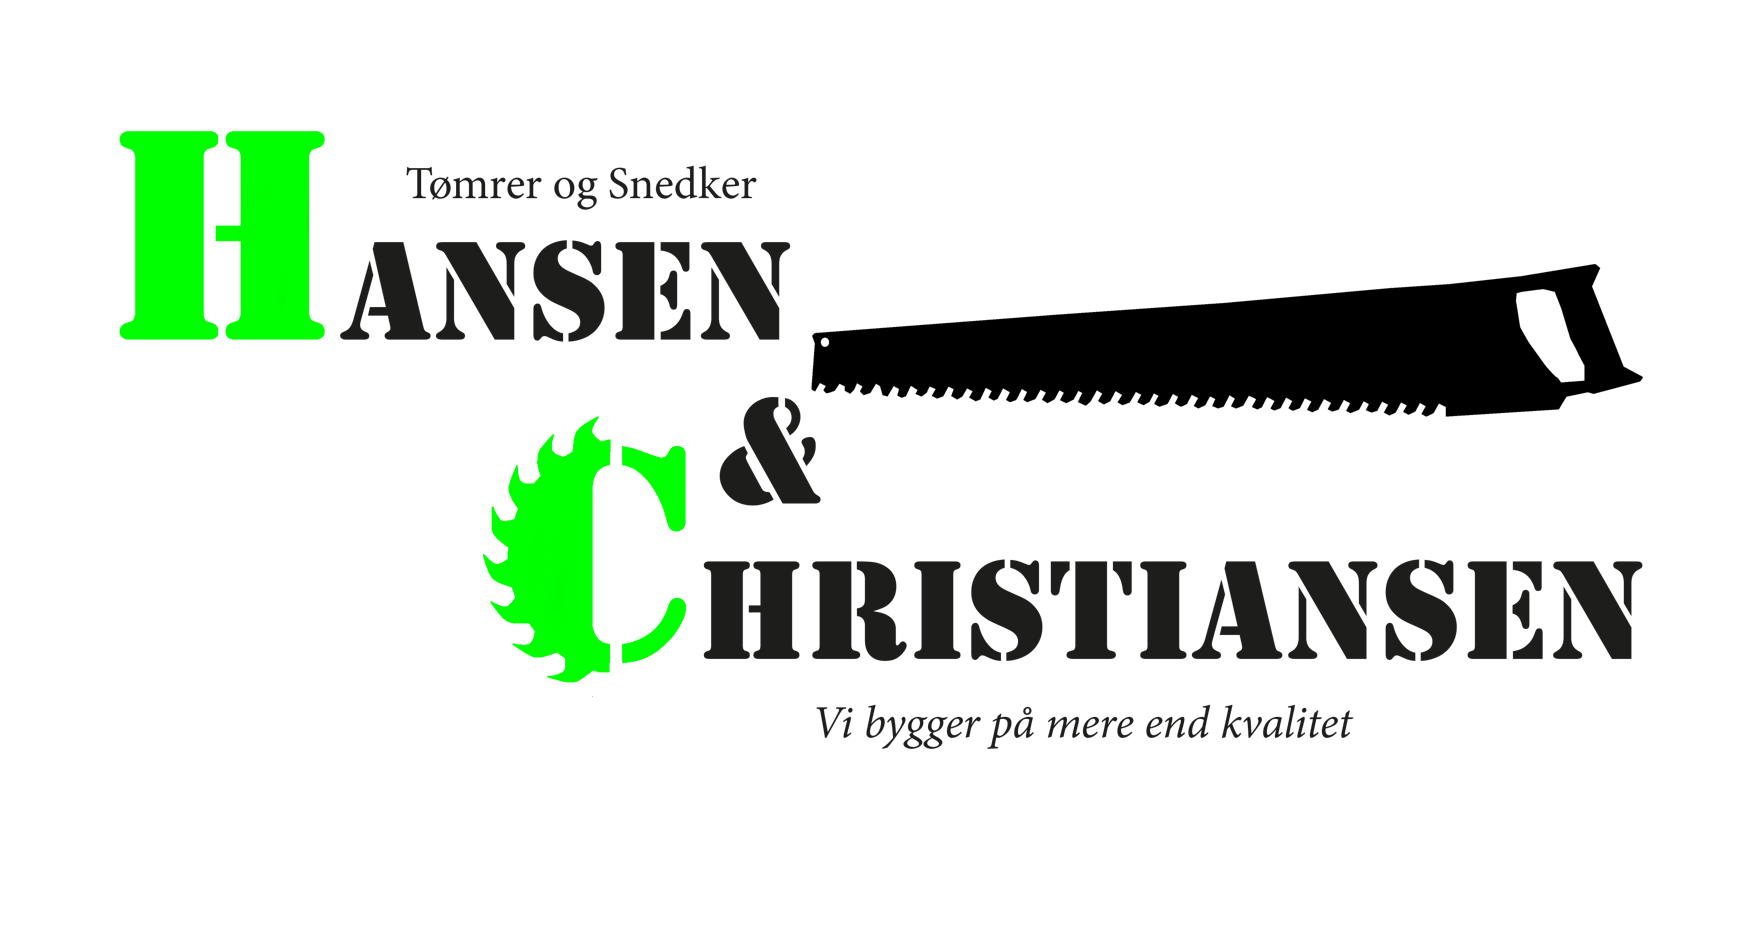 Hansen & Christiansen ApS